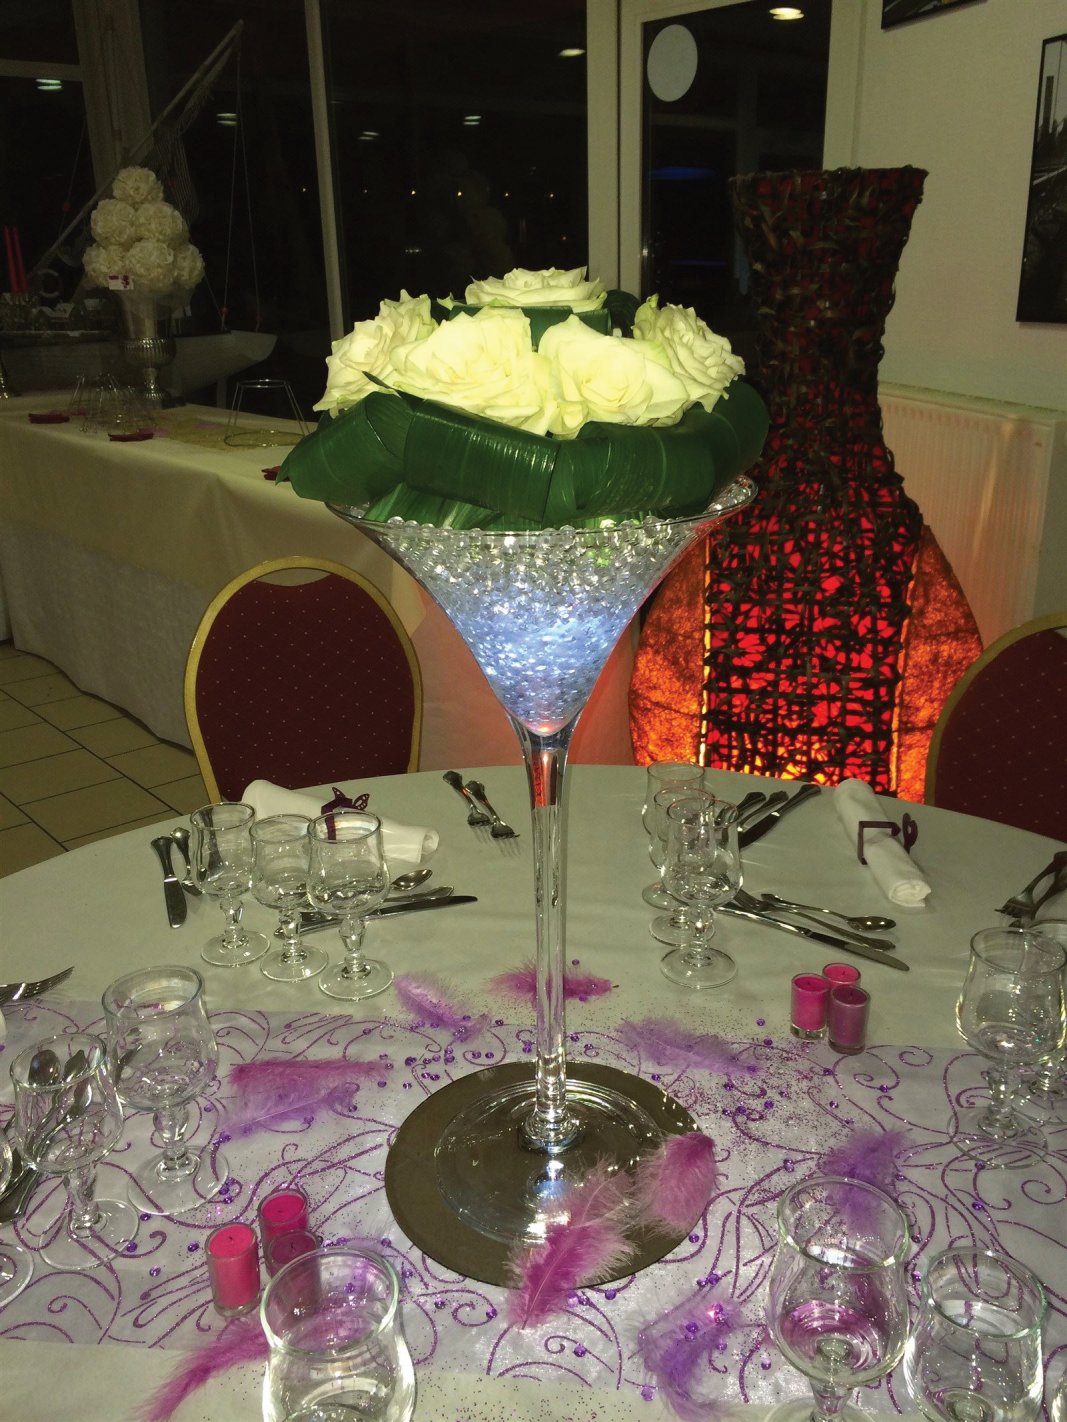 Coupe Martini Ht 50 cm roses fraîches blanches, billes d'eau gélifiées, led